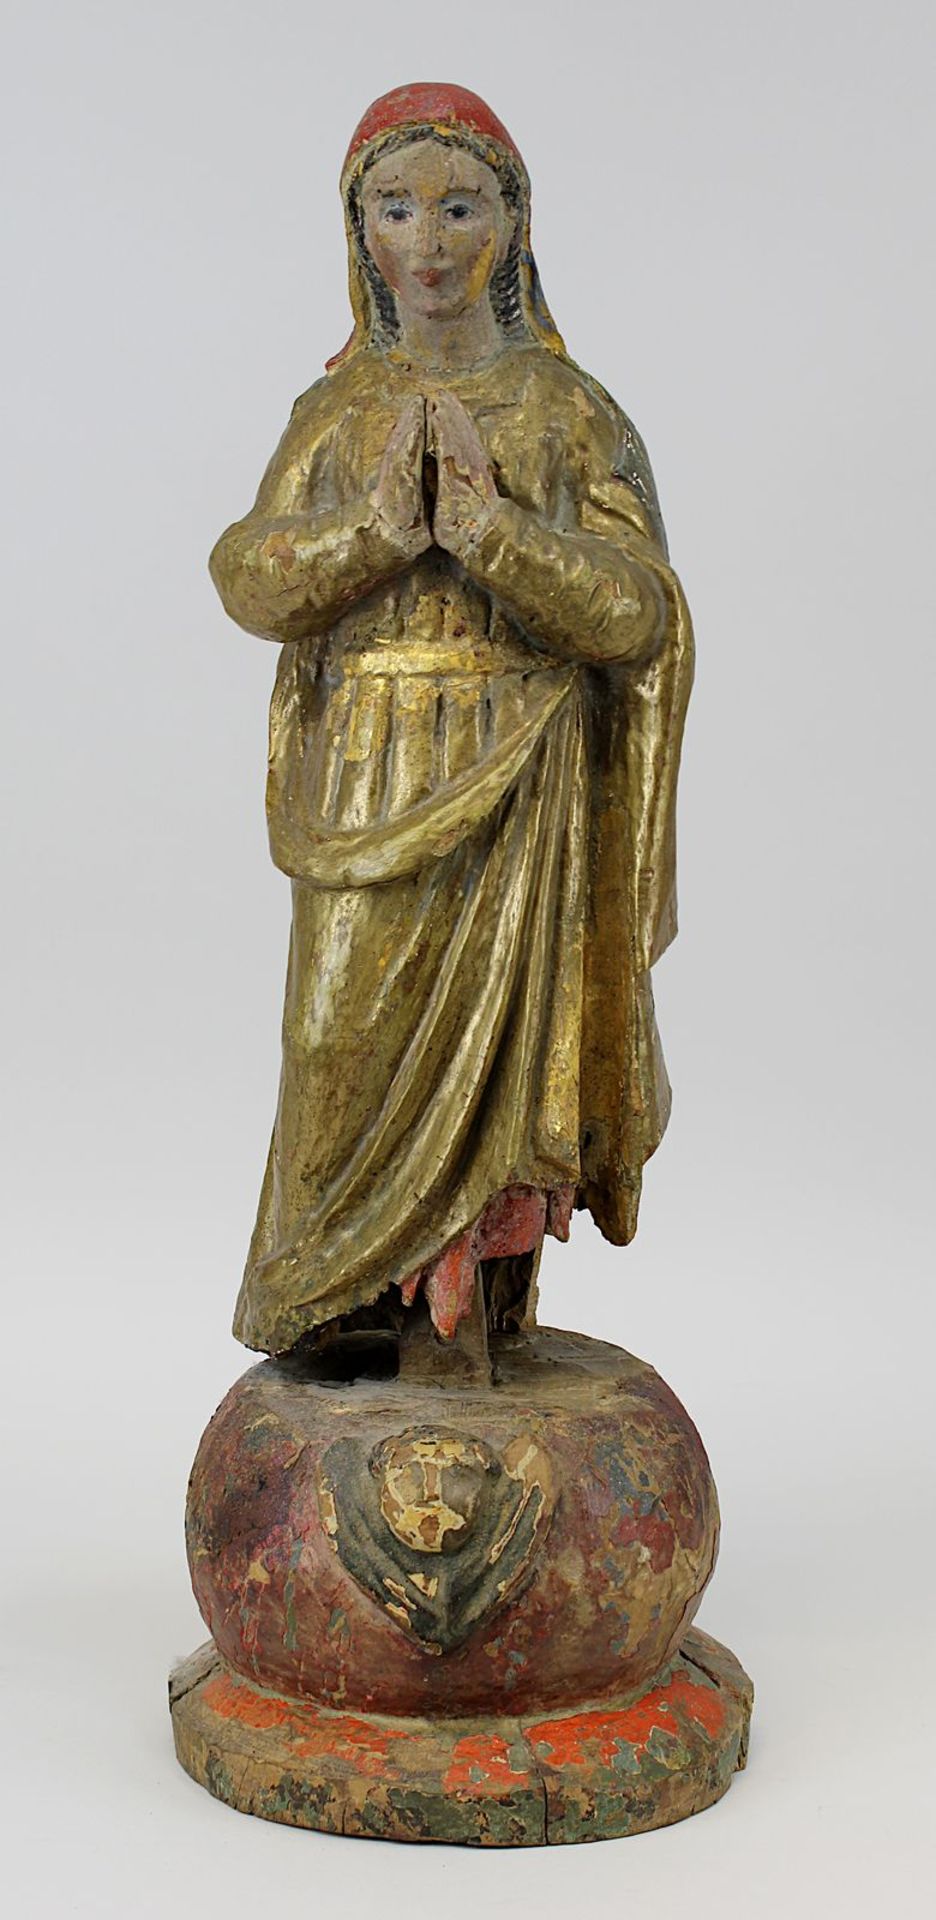 Heilige Maria, süddeutsch 17. Jh., Holz geschnitzt, farbig und gold gefasst, Fassung übergangen, auf